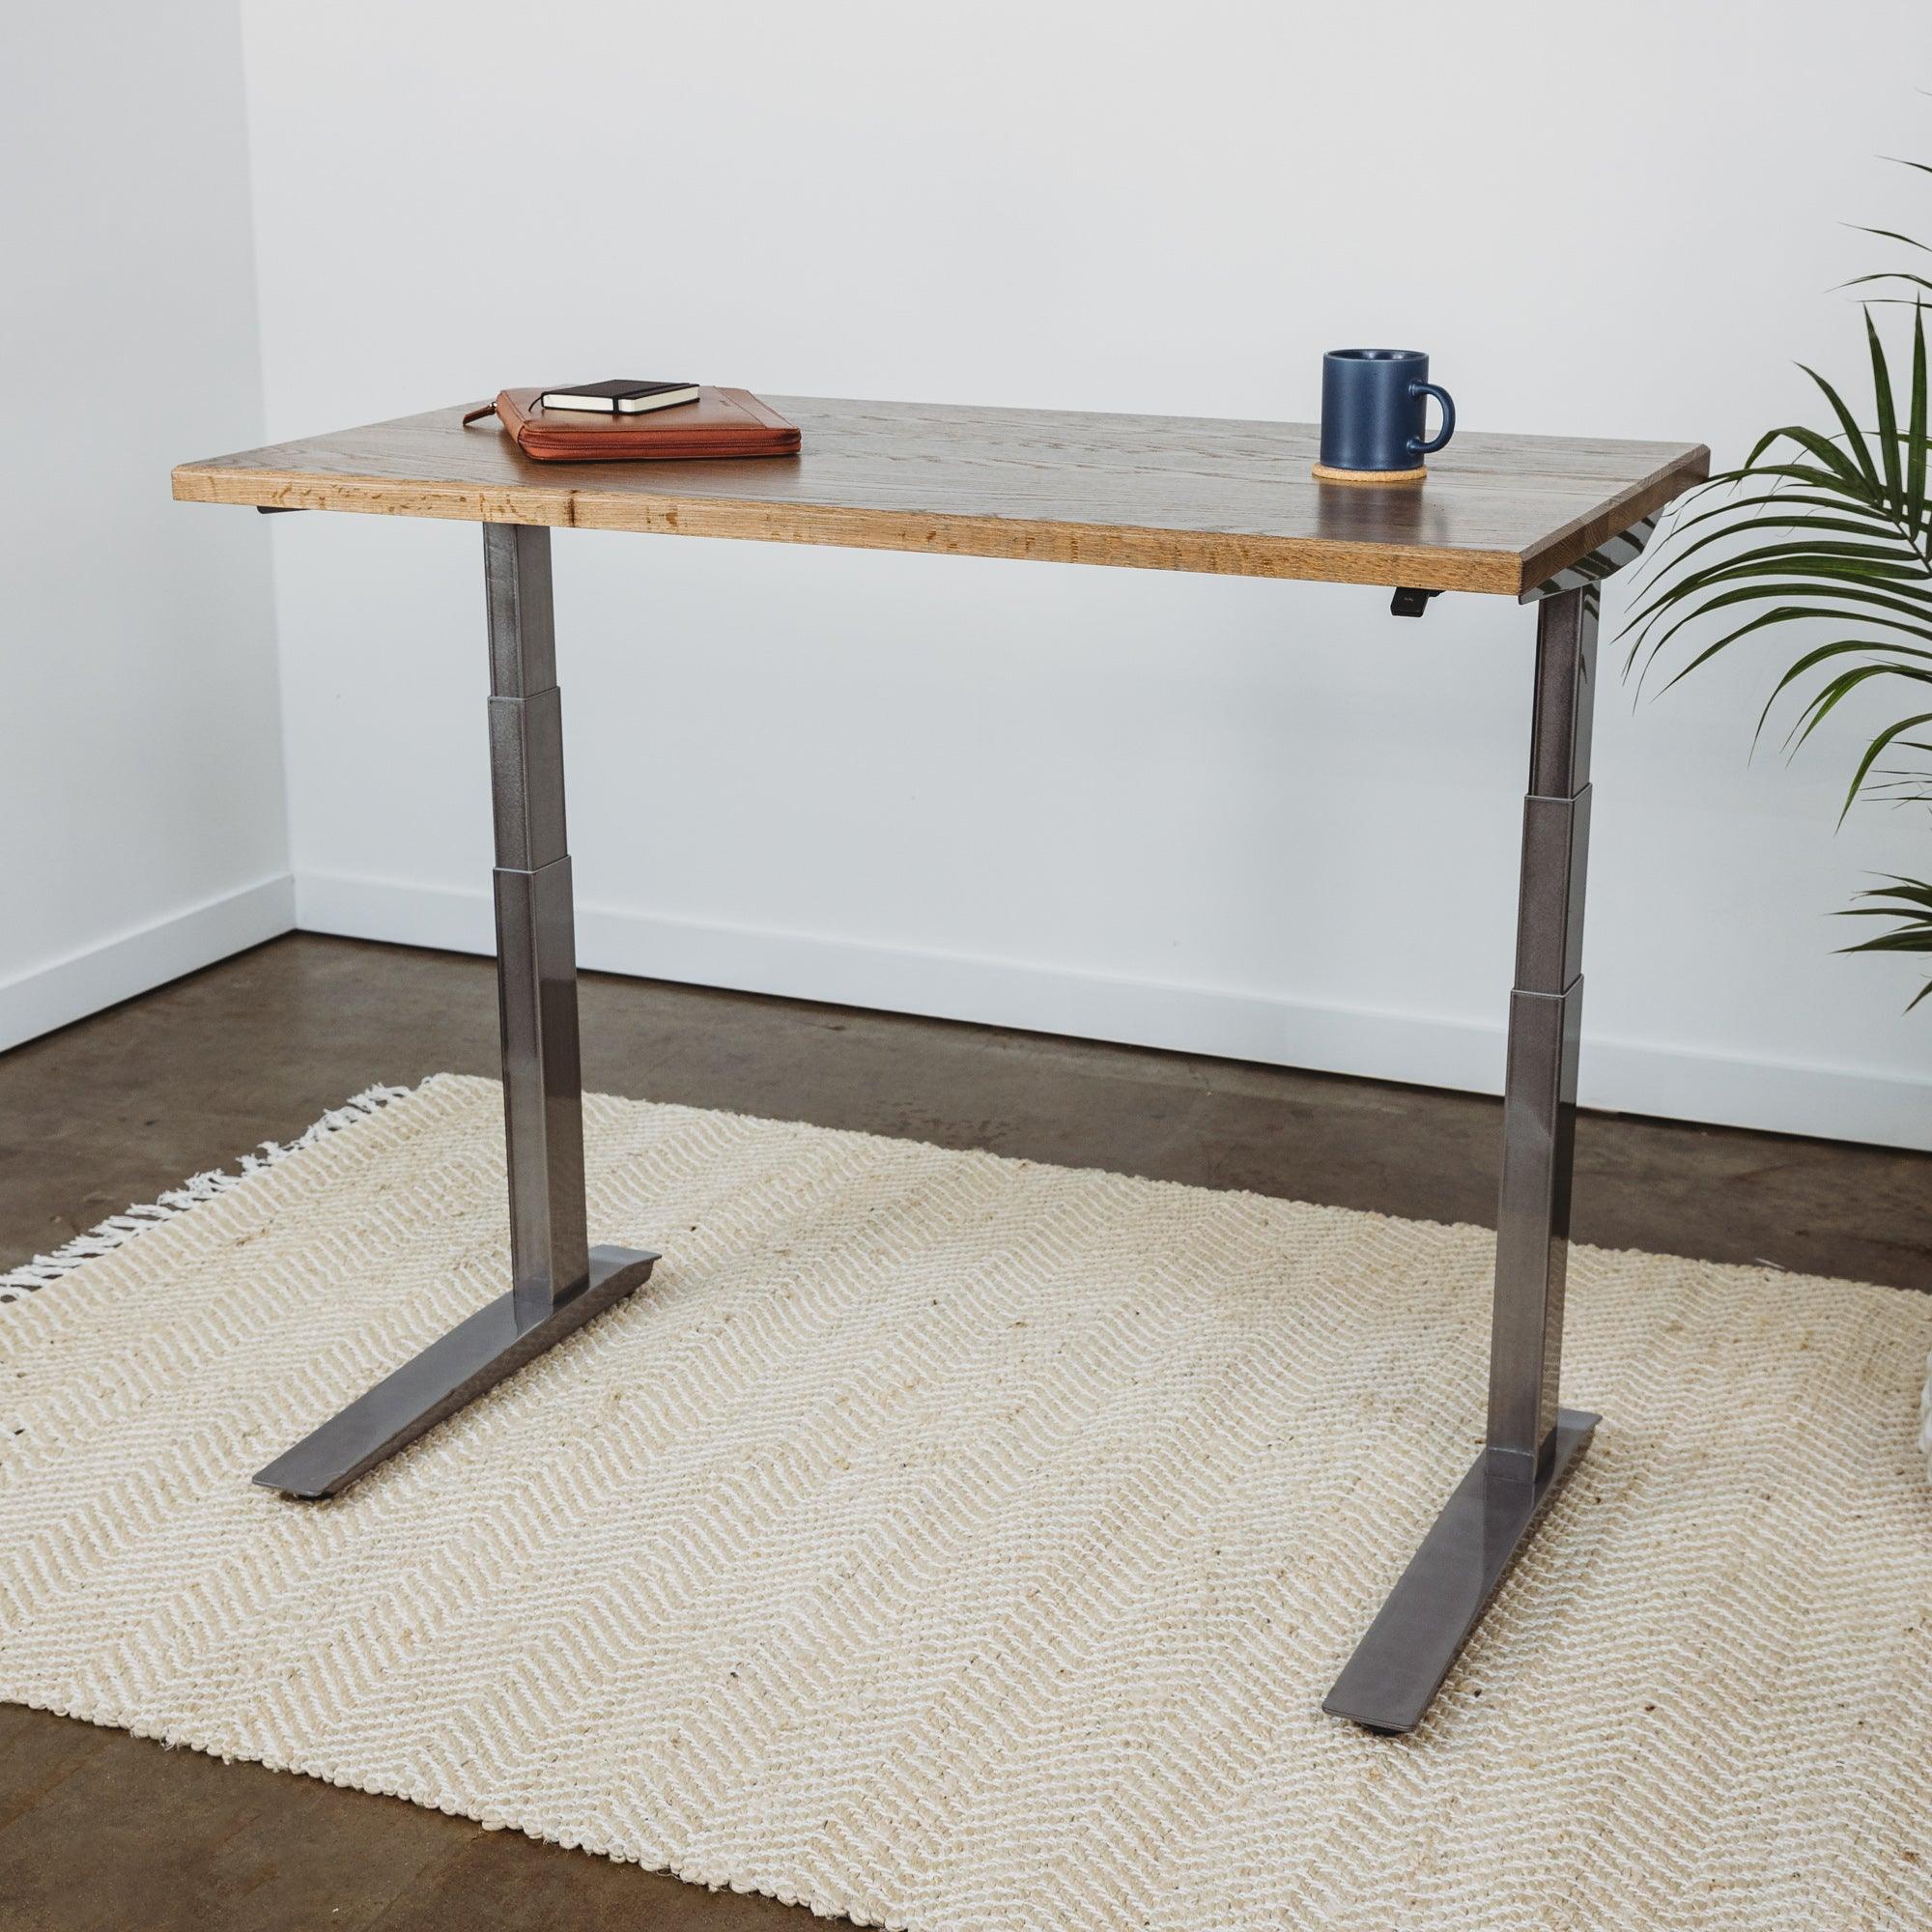 Wood Slab desk with adjustable base